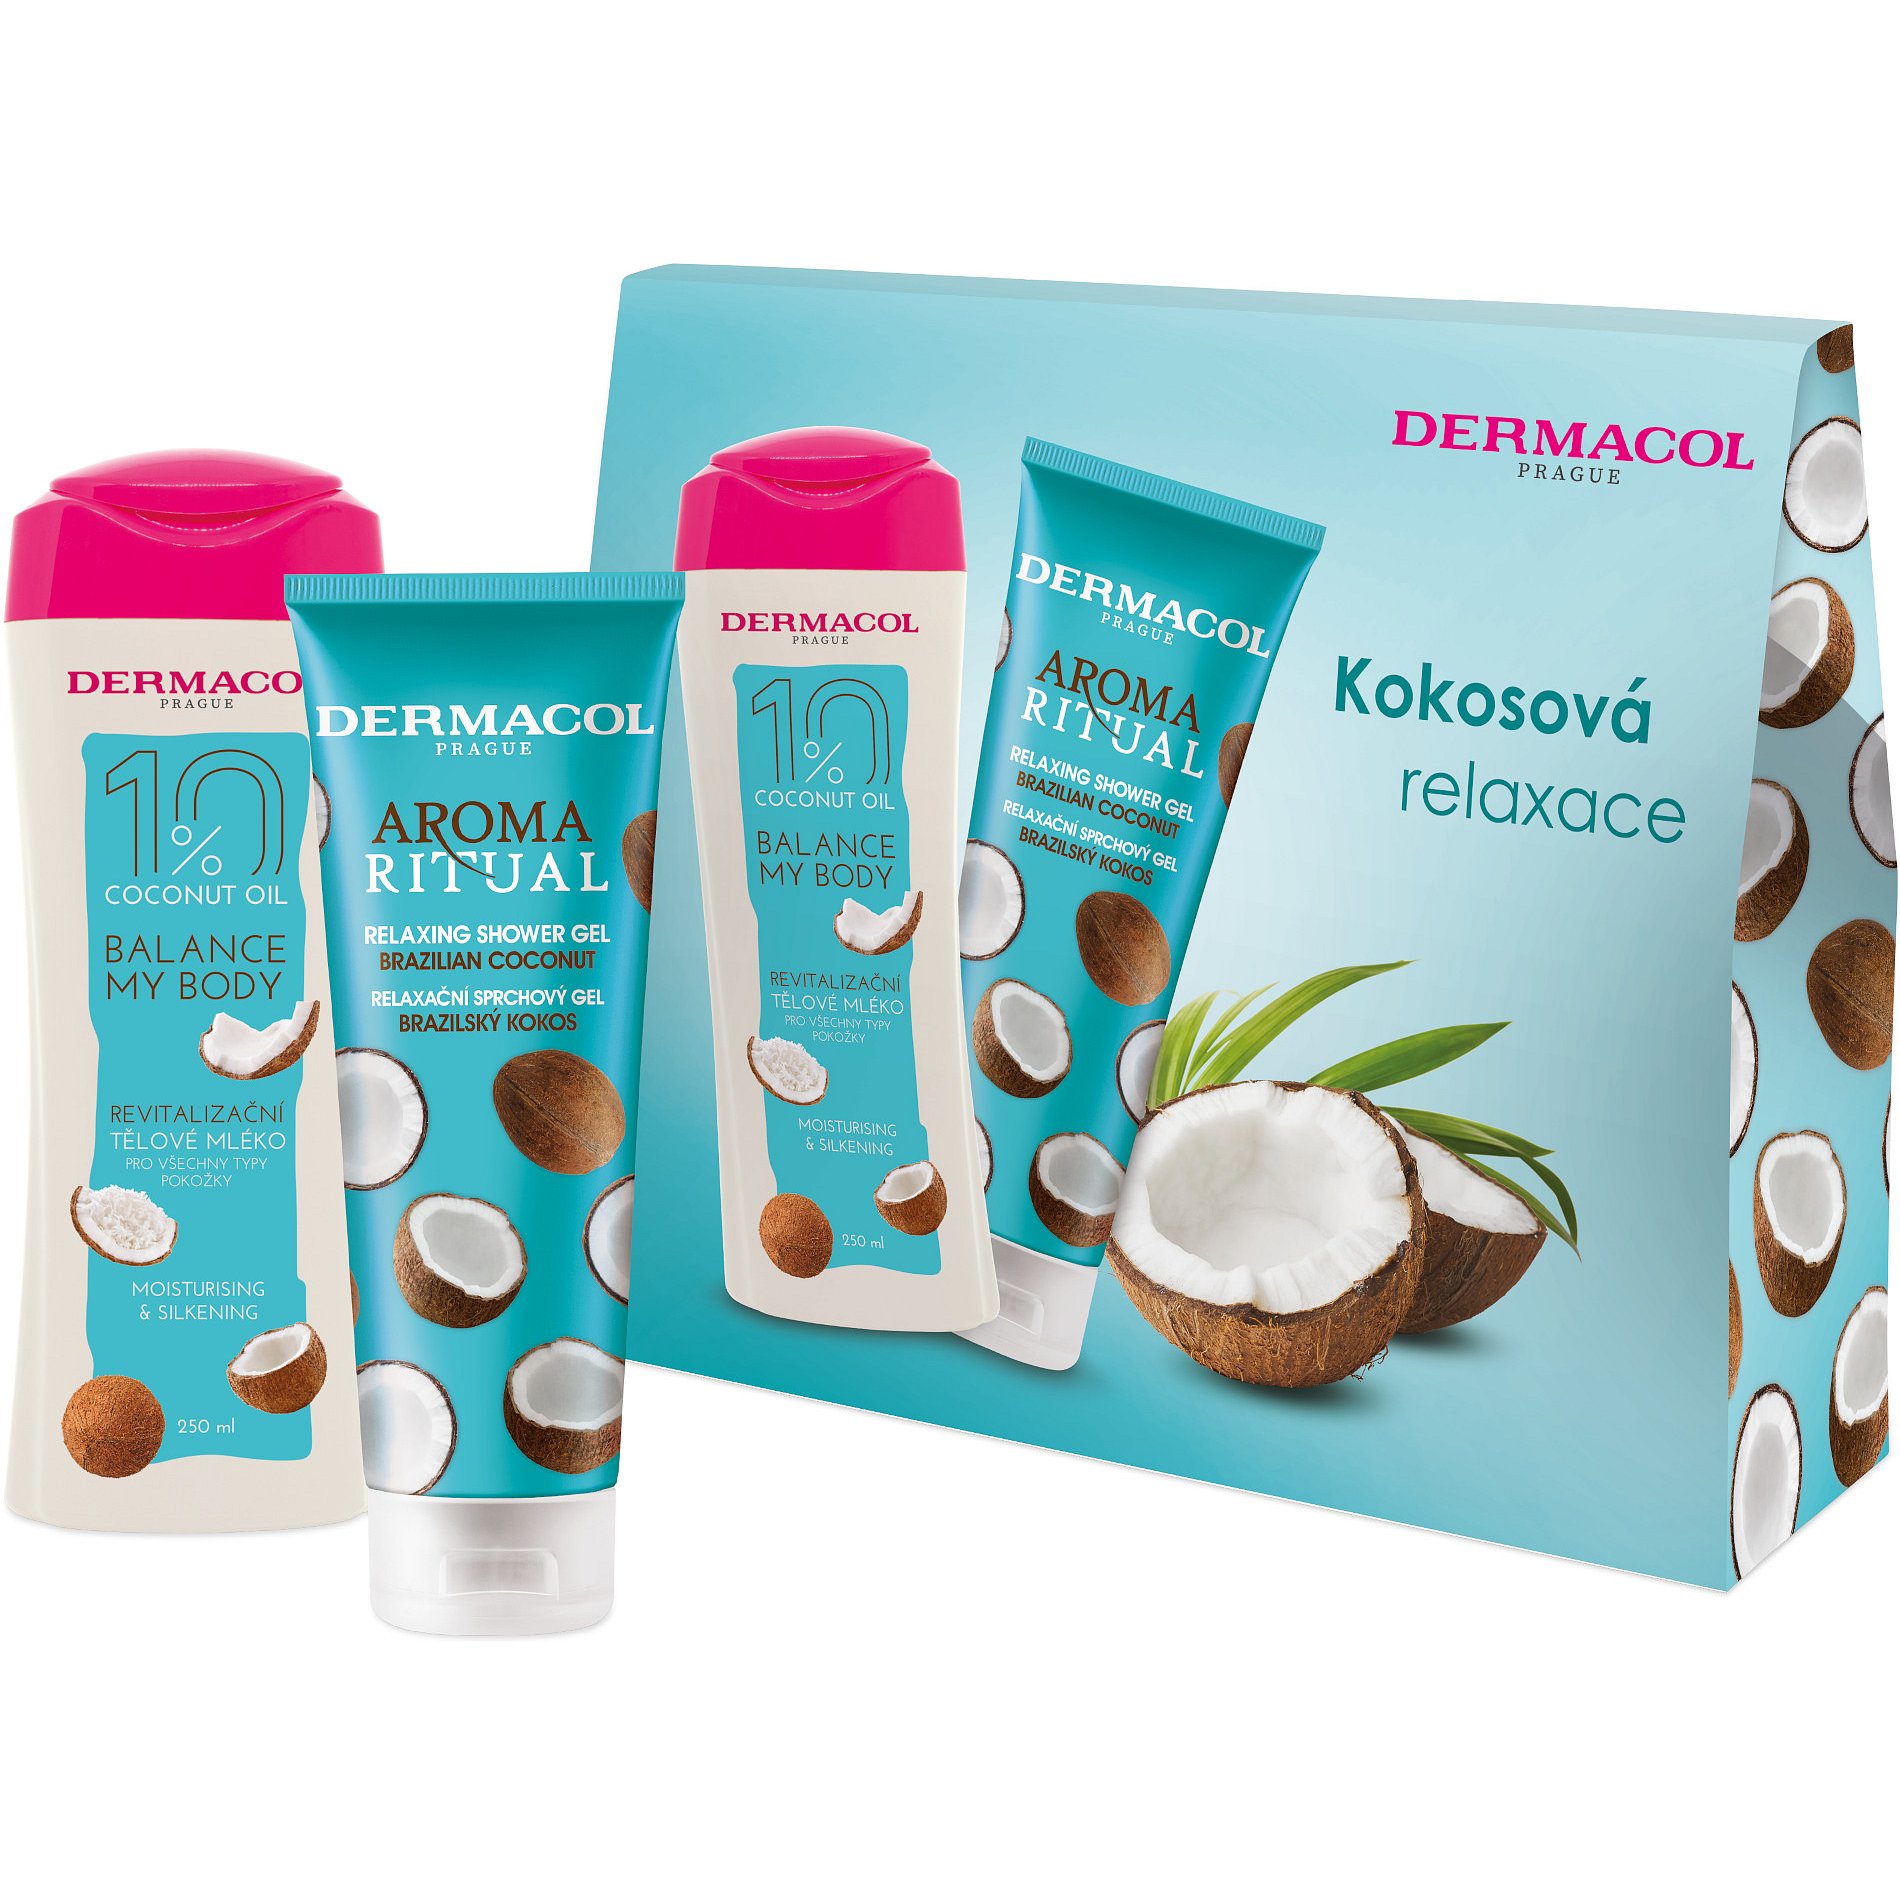 Dermacol DB SG Brazilský kokos + Coconut oil Tělové mléko